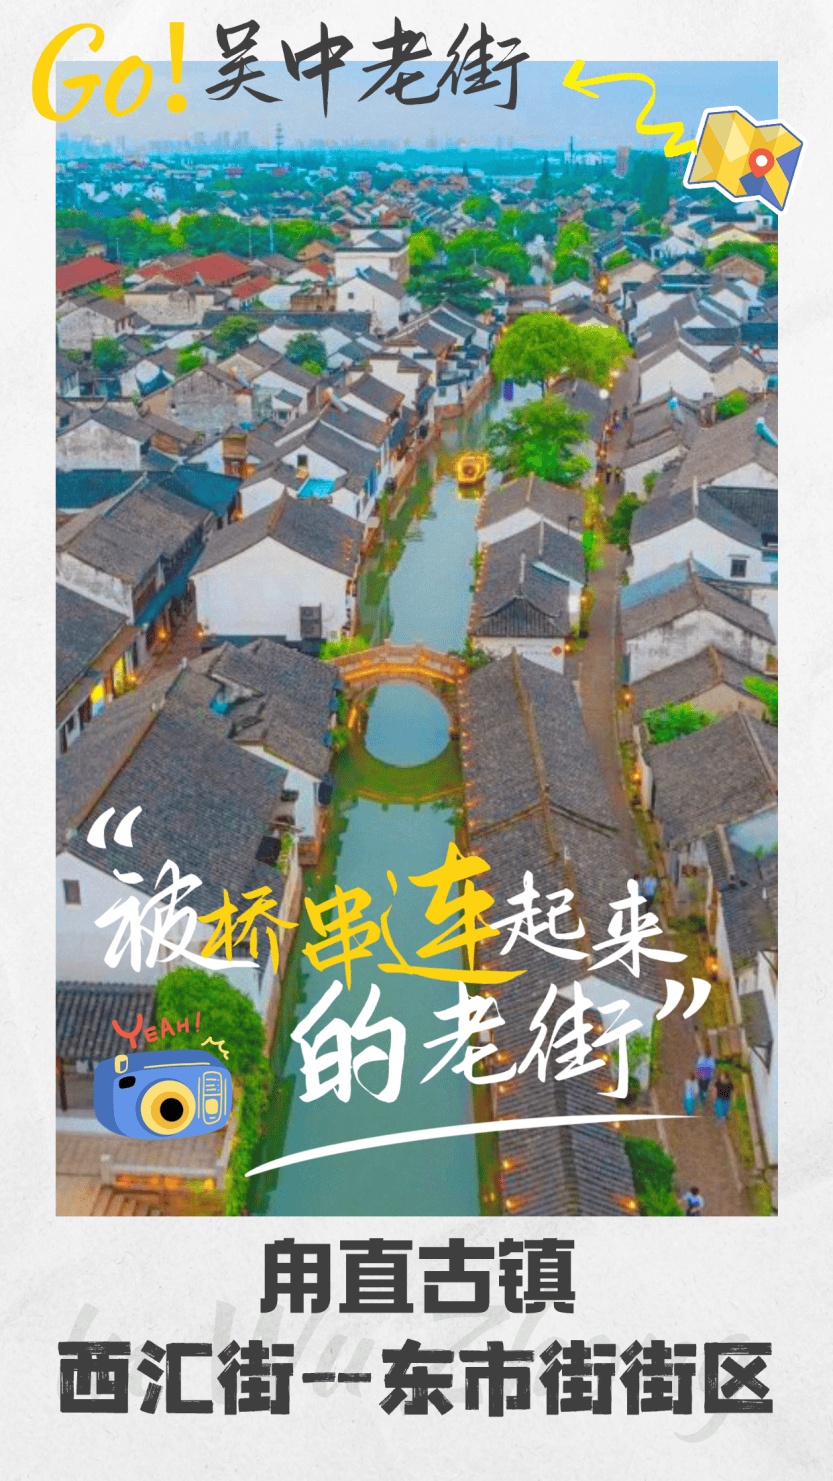 小巷总是藏着故事，慢下来，到苏州吴中古镇，共赴一场古今对话